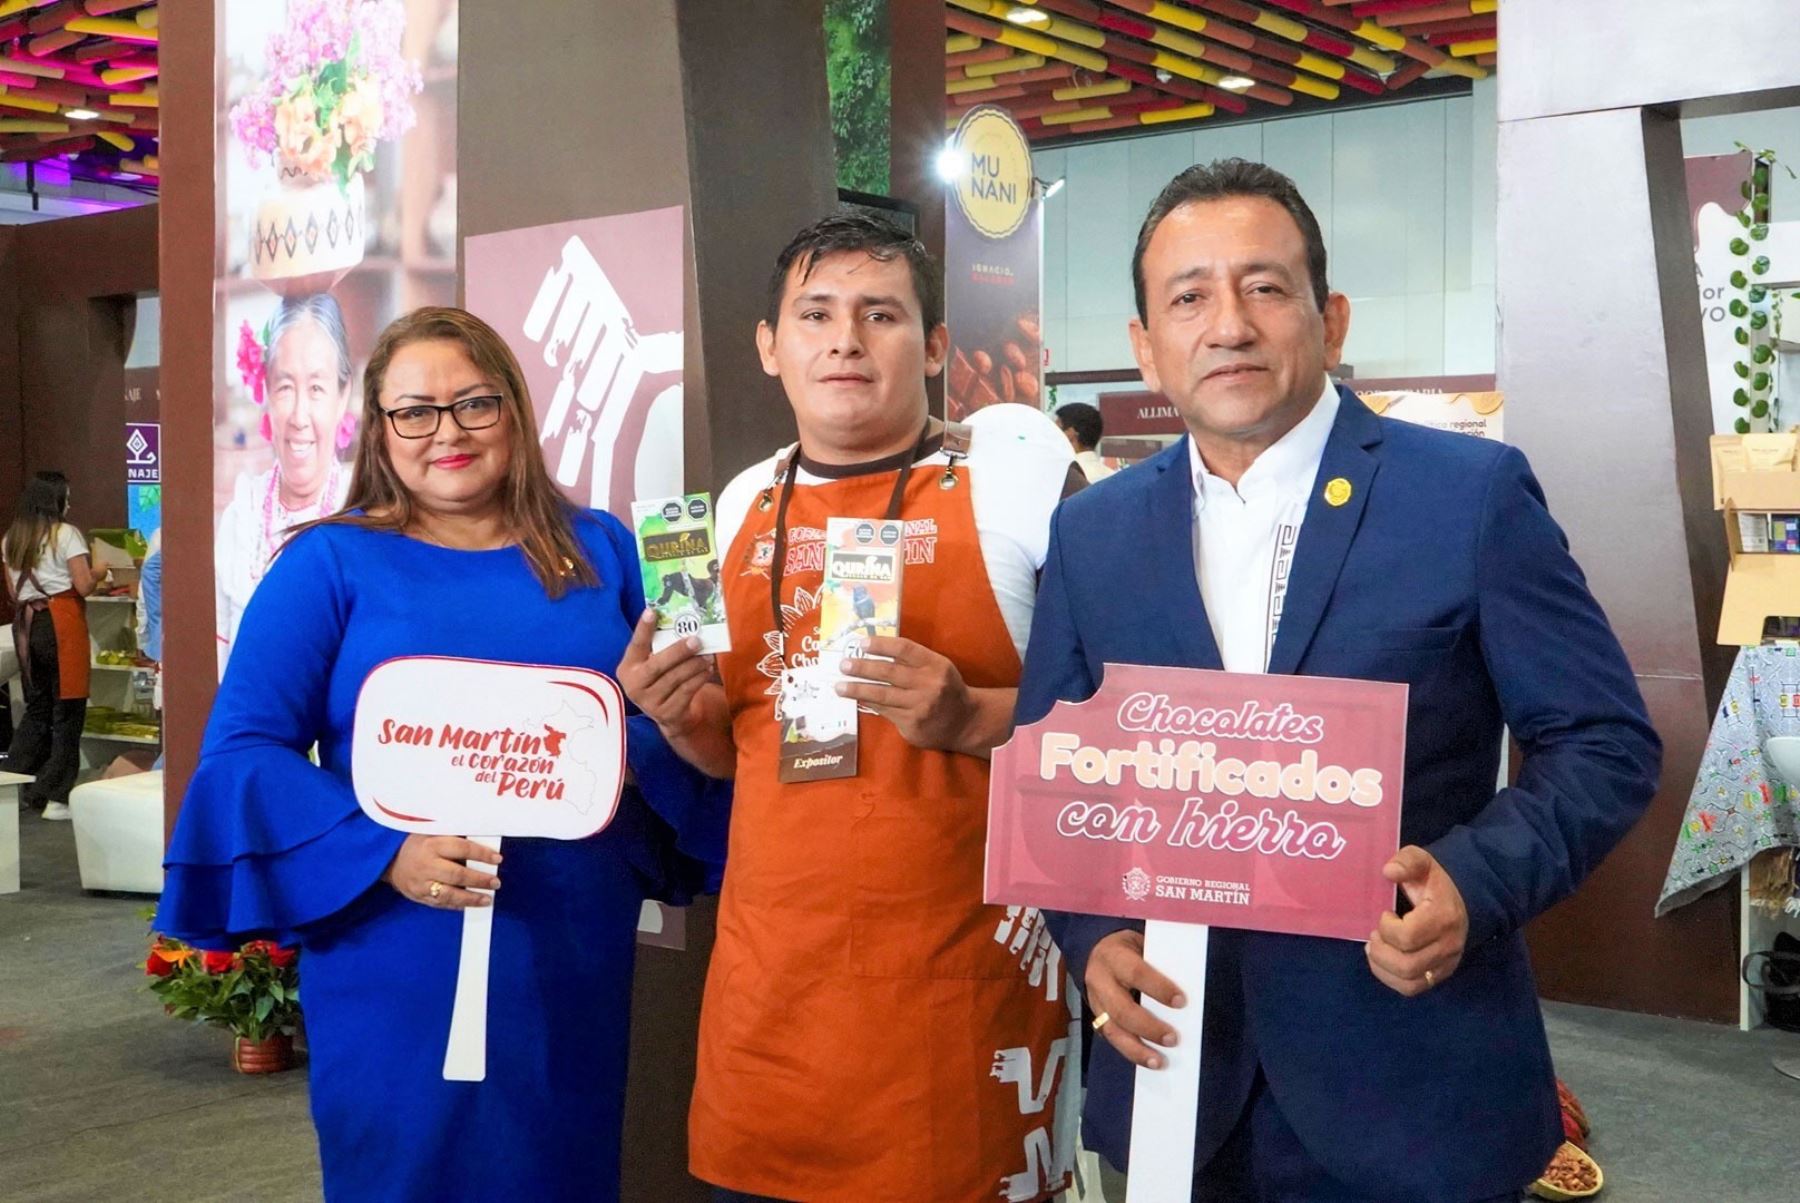 Chocolate fortificado contra la anemia es el novedoso producto que presenta el Gobierno Regional de San Martín y es sensación en el Salón del Cacao y Chocolate que se celebra en Lima. ANDINA/Difusión